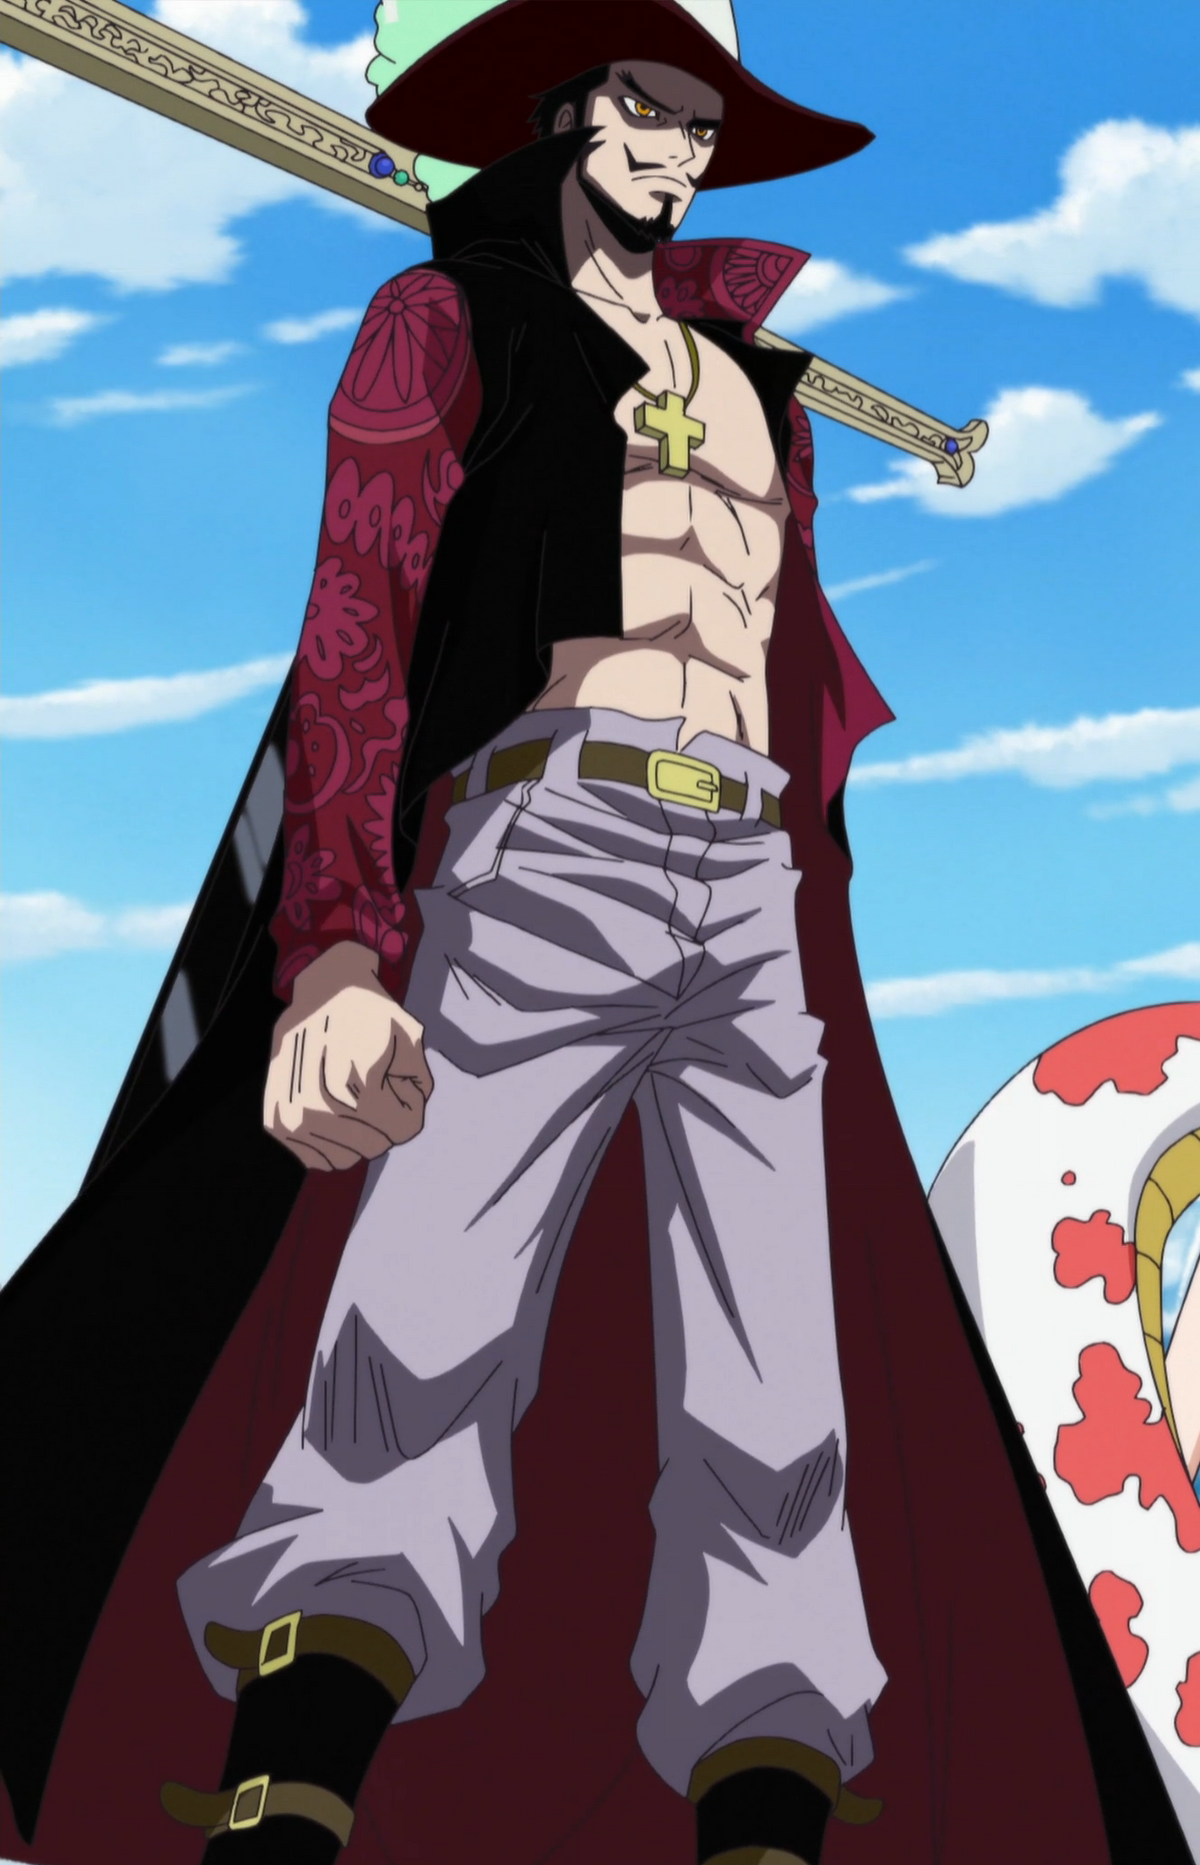 Zoro de One Piece: História, roupas, recompensas, idade, poderes e mais